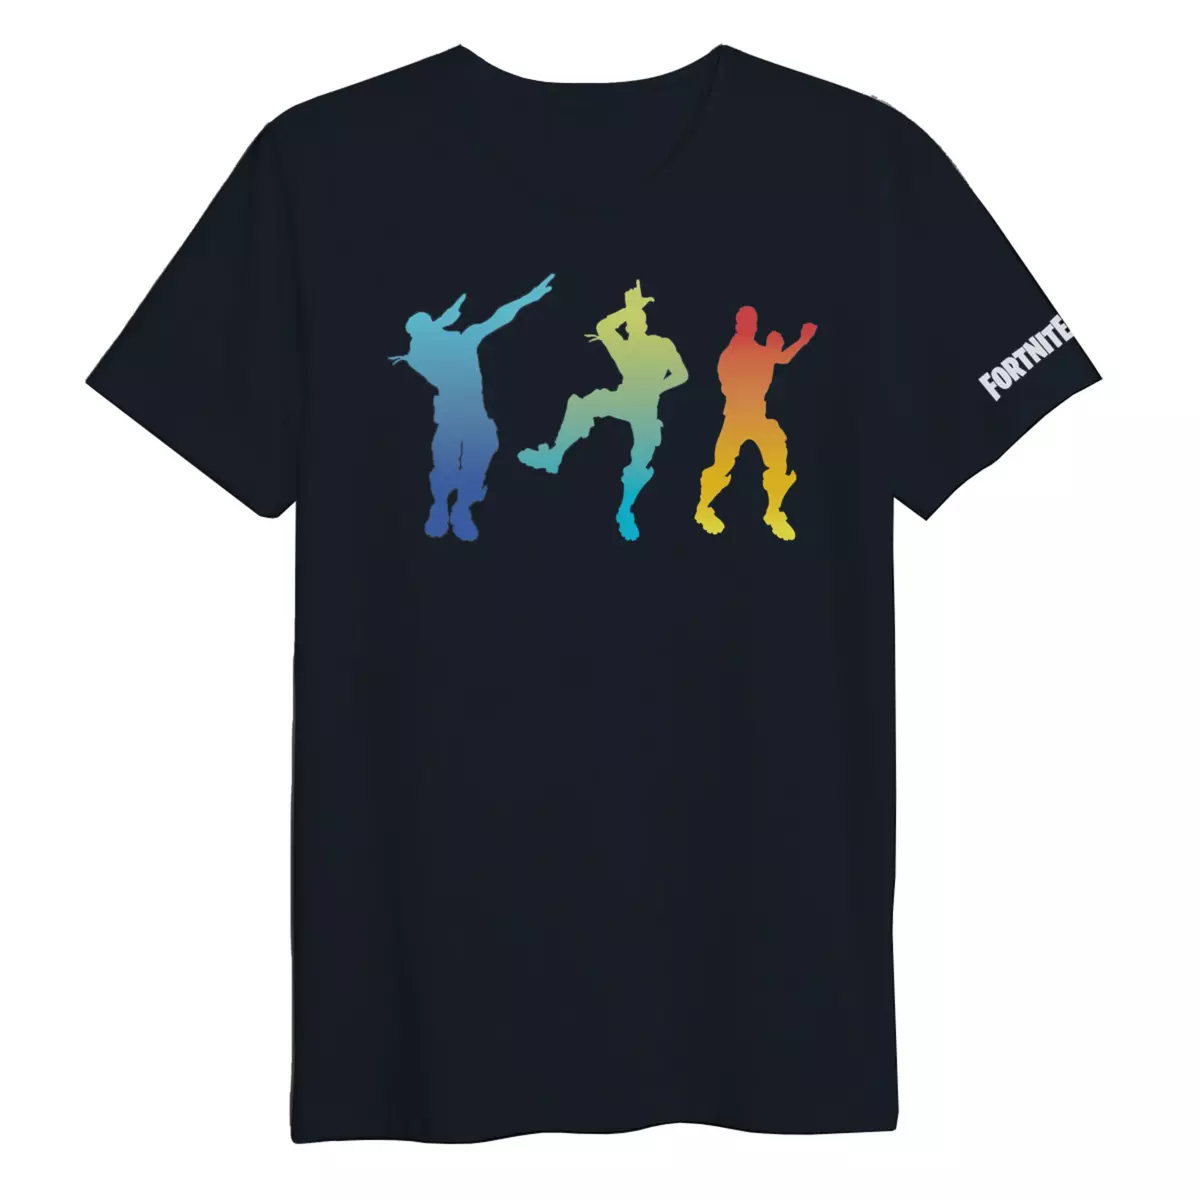 T-Shirt Fortnite Exclusivité Auchan 3 Dances Noir Taille Enfant 14ans